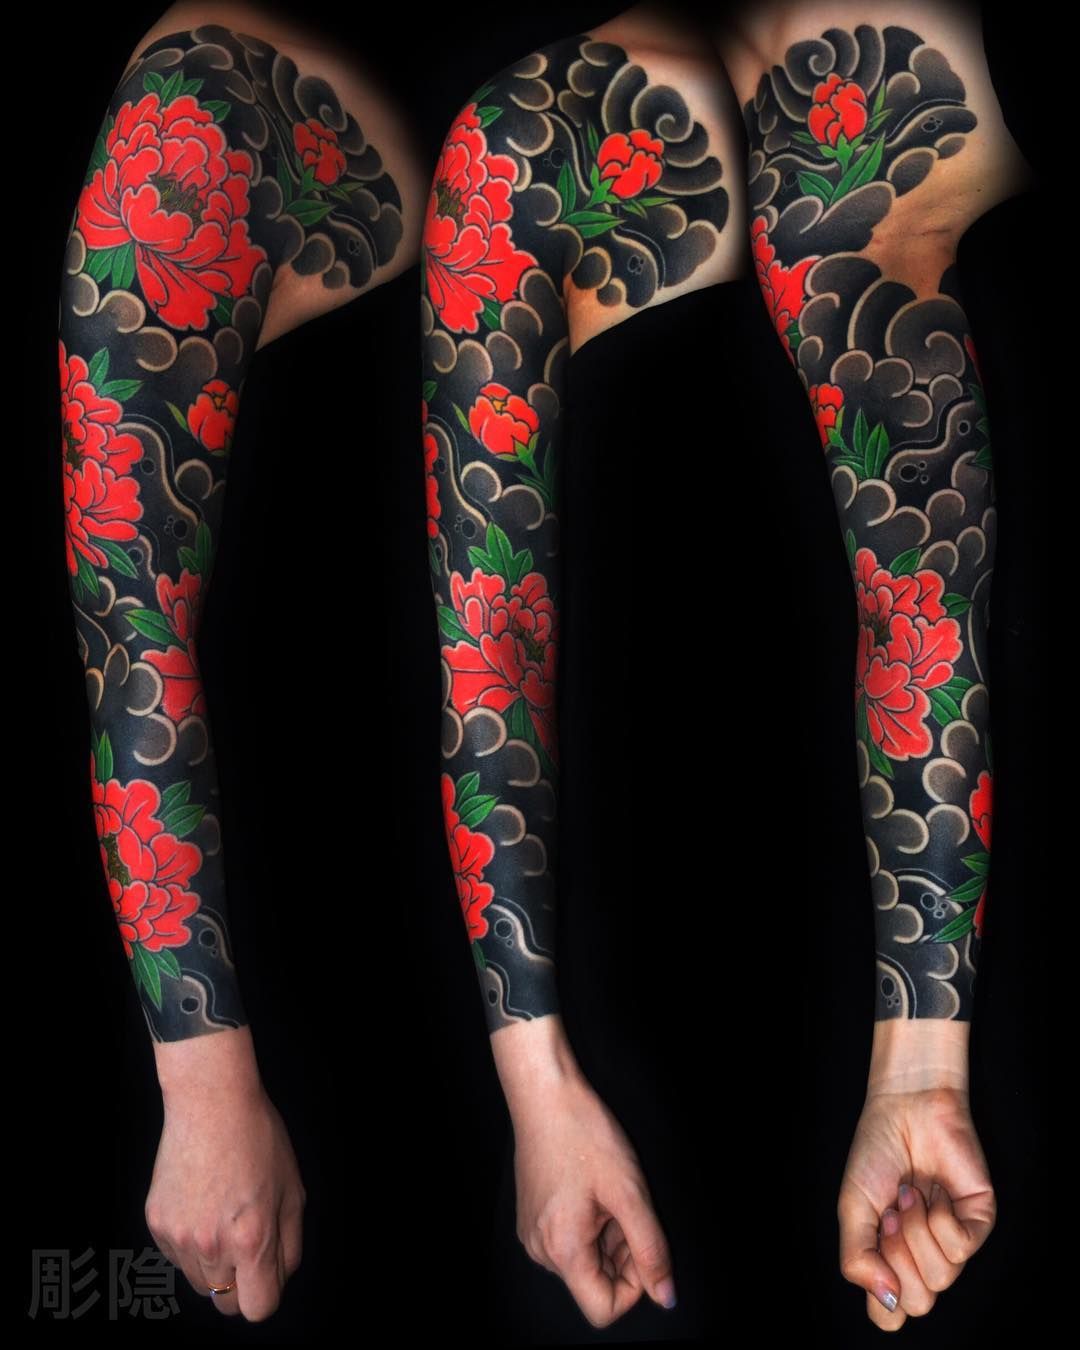 tatouage manchette idée colorée inspiration japonaise fleurs